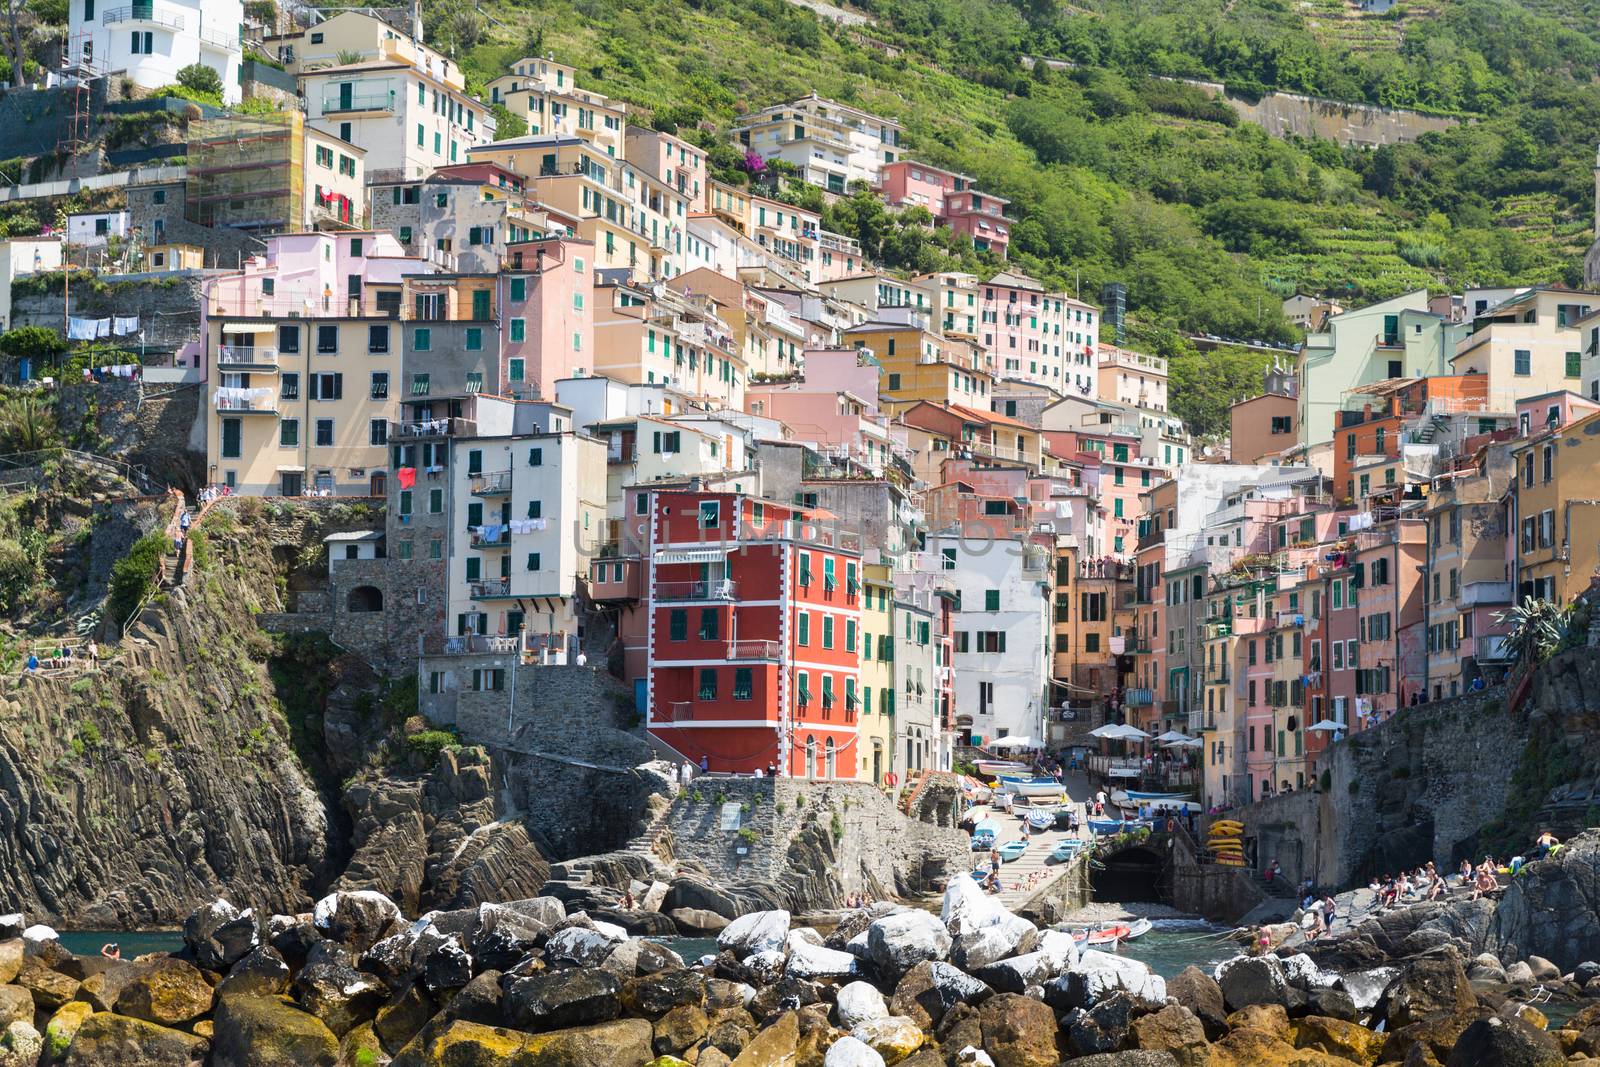 The village of Riomaggiore of the Cinque Terre, on the Italian Riviera in the Liguria region of Italy